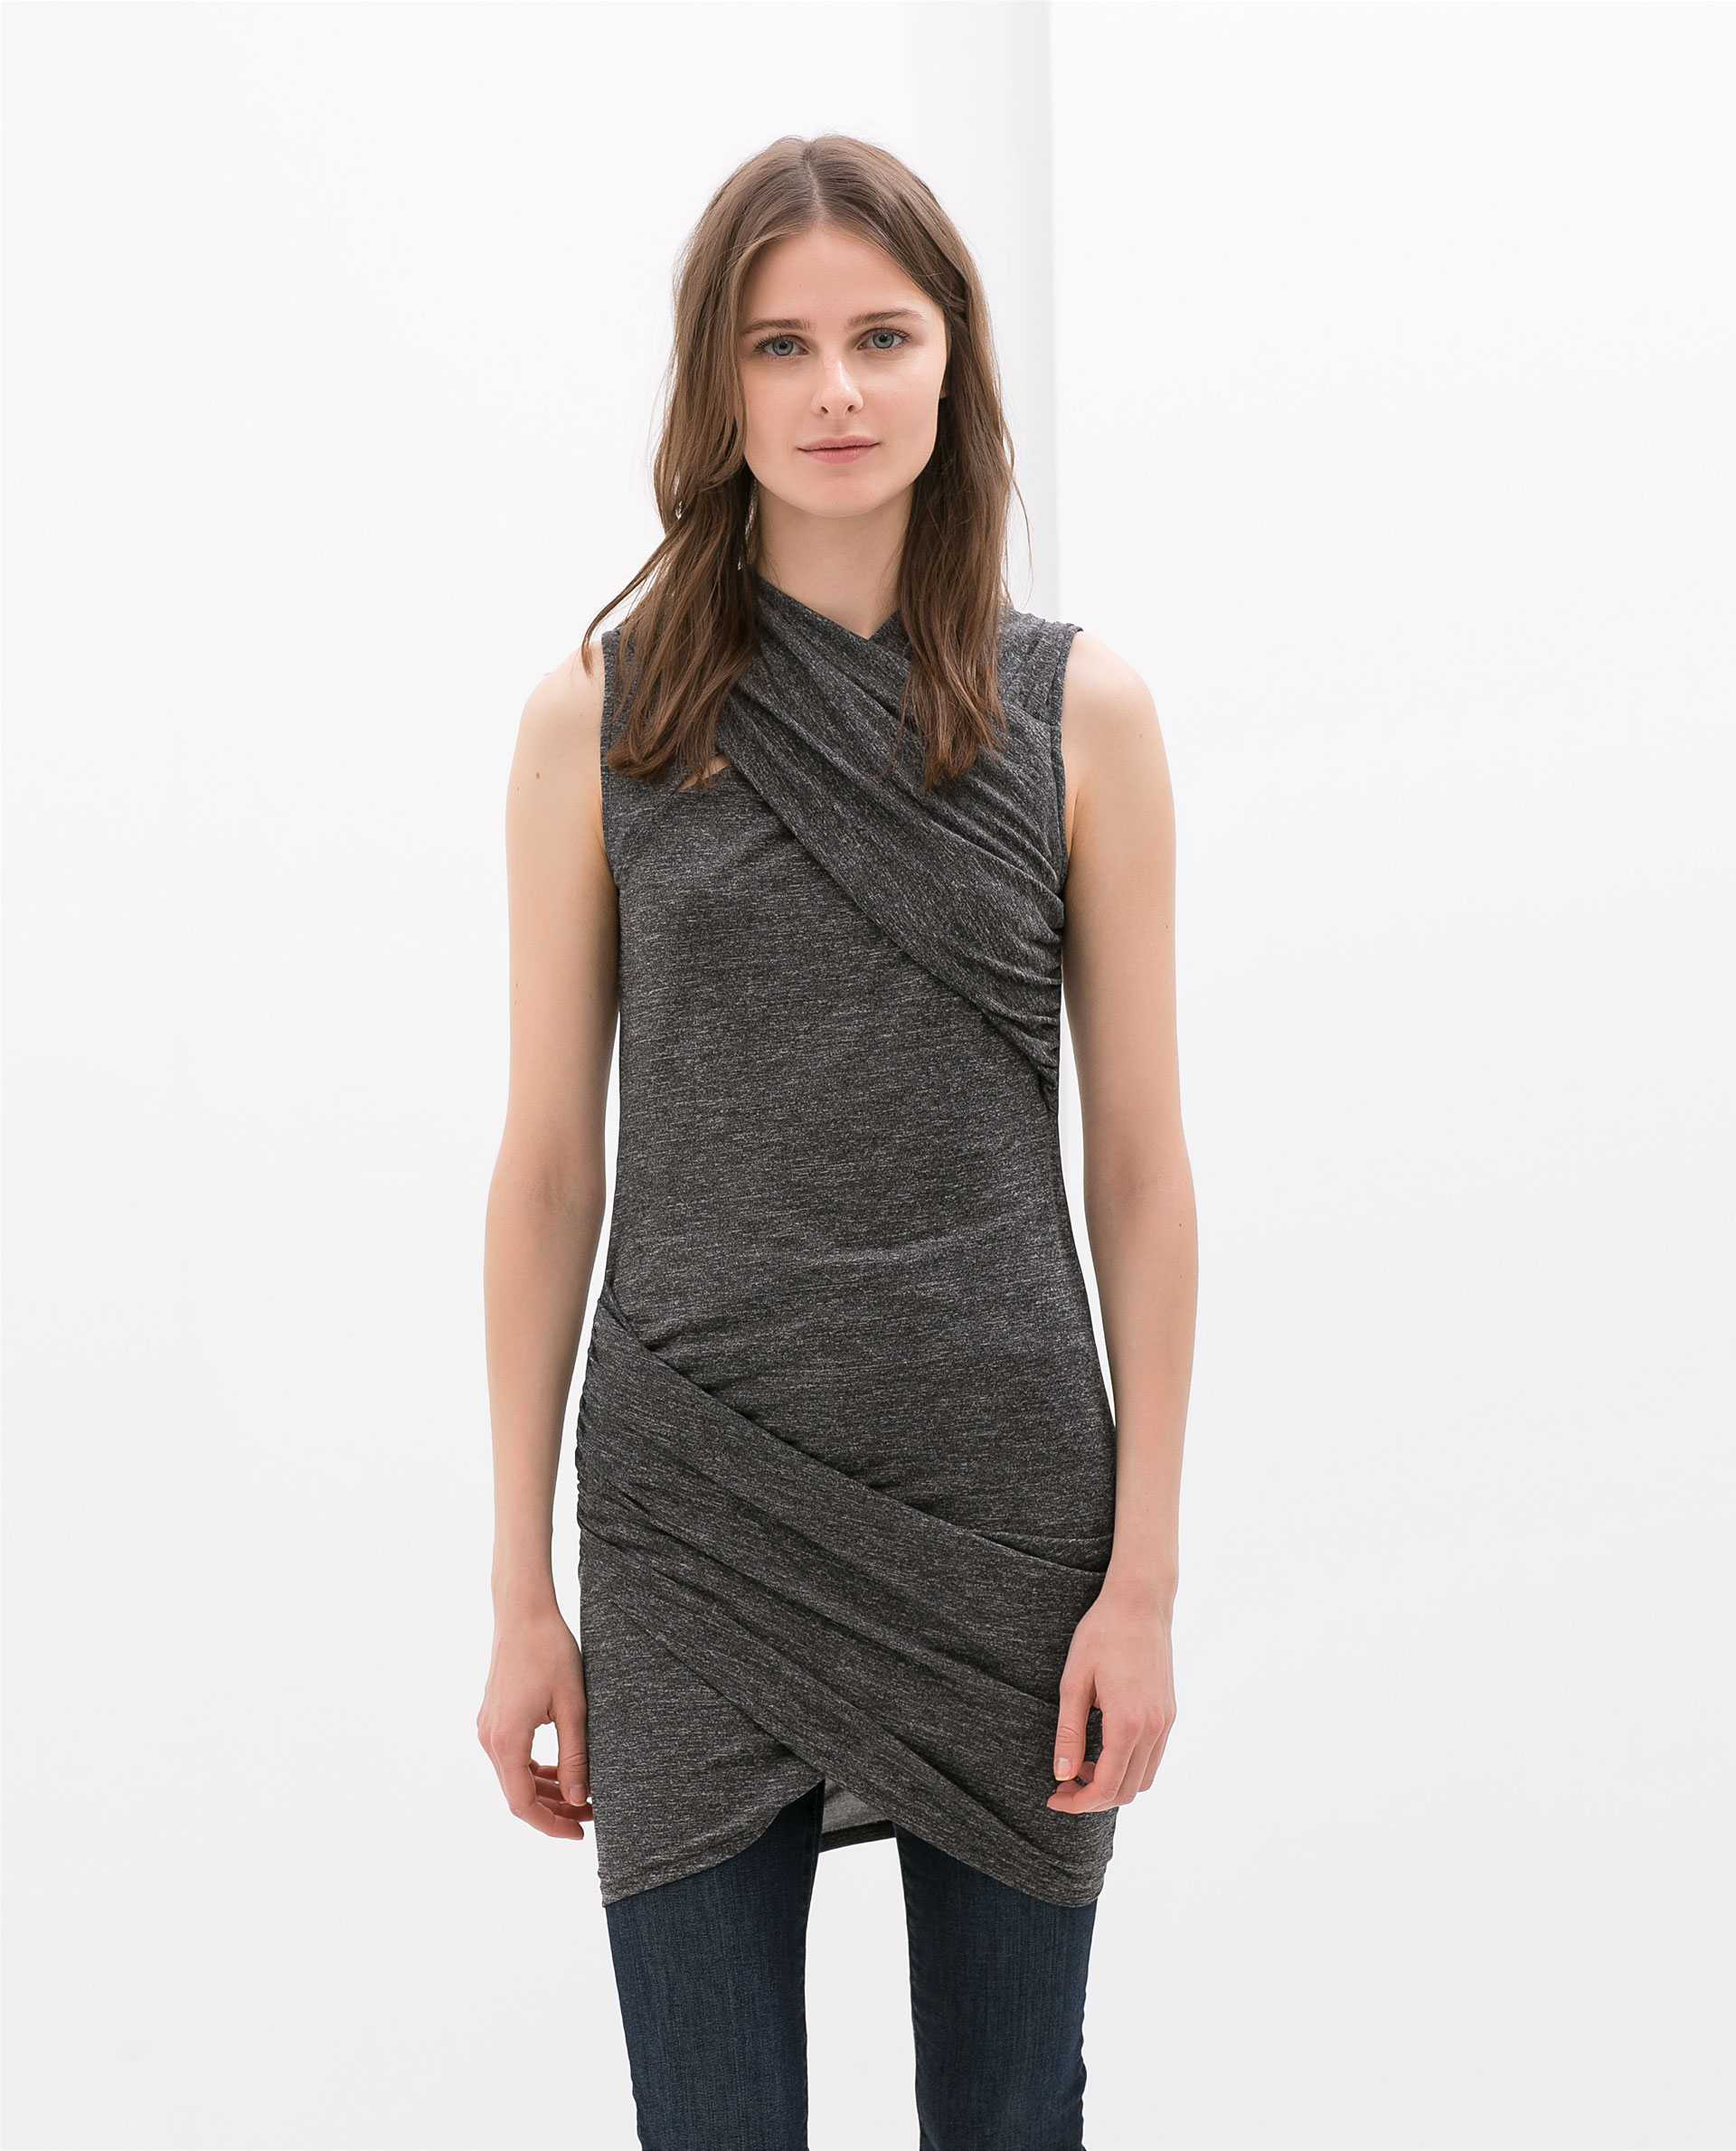 Zara grey dress